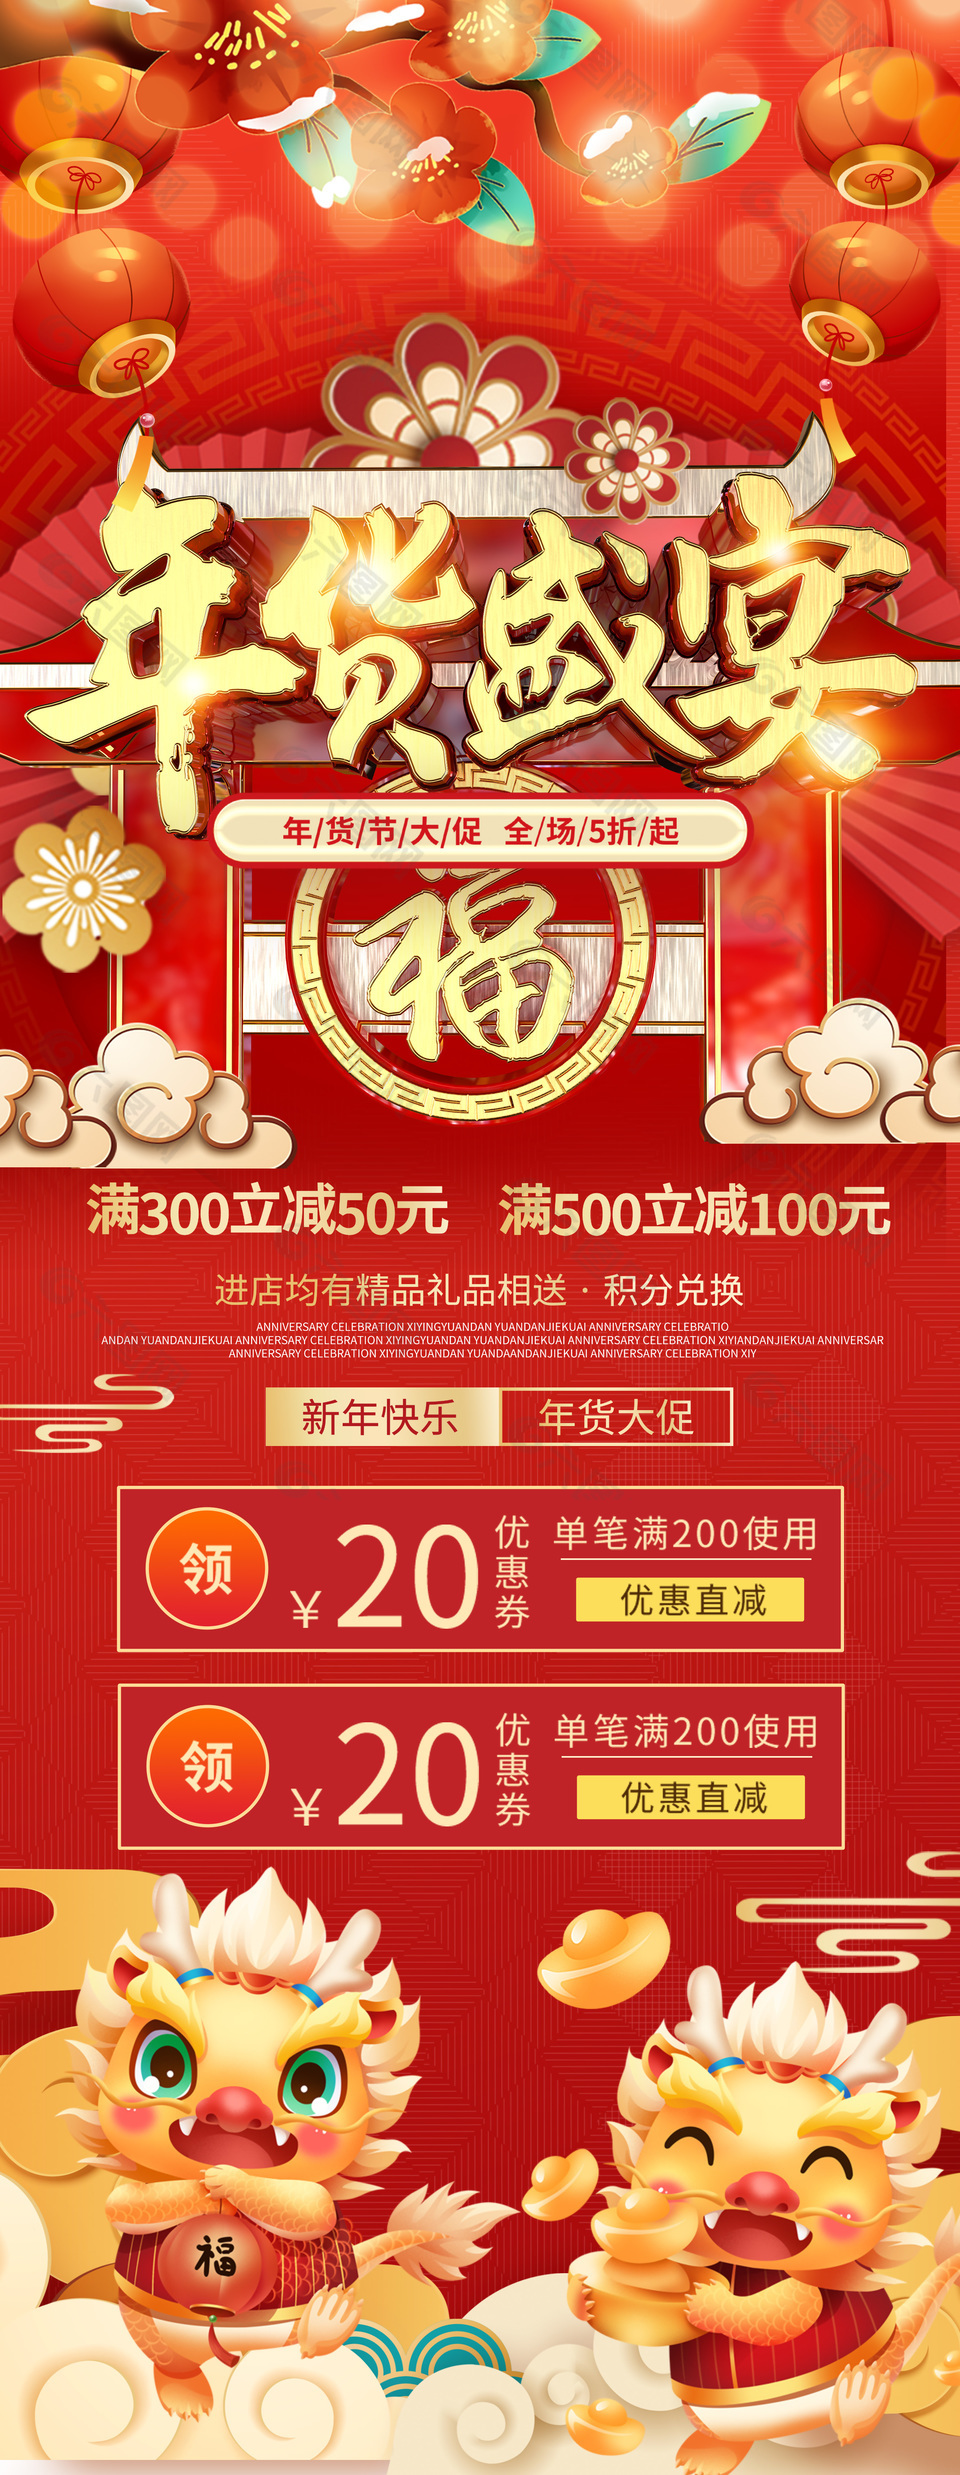 新年快乐年货节大促中国风手机海报设计